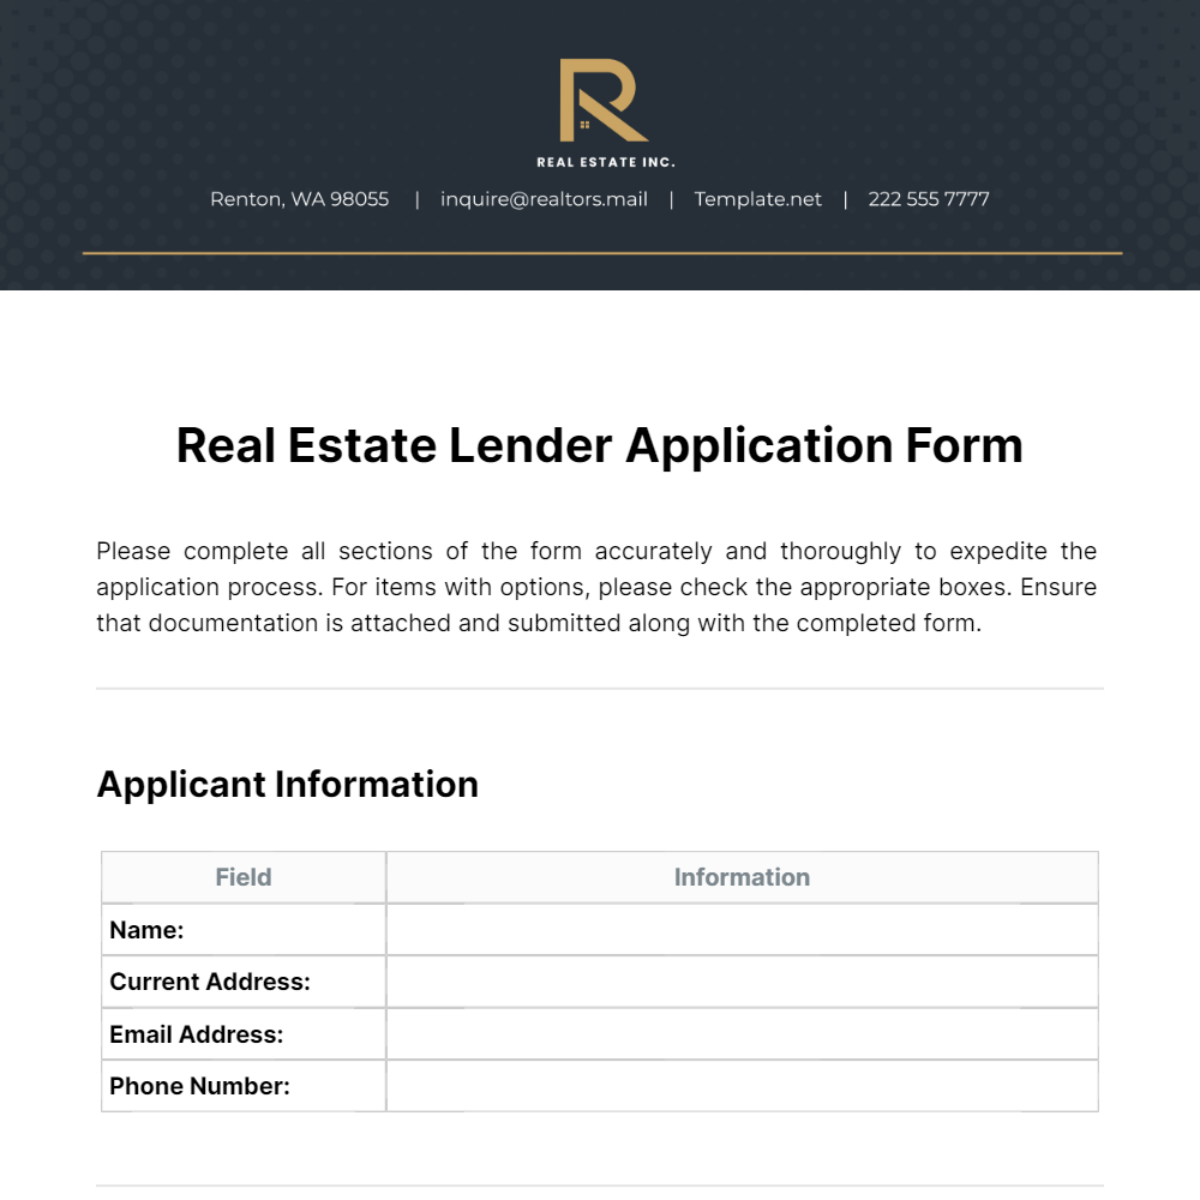 Real Estate Lender Application Form Template